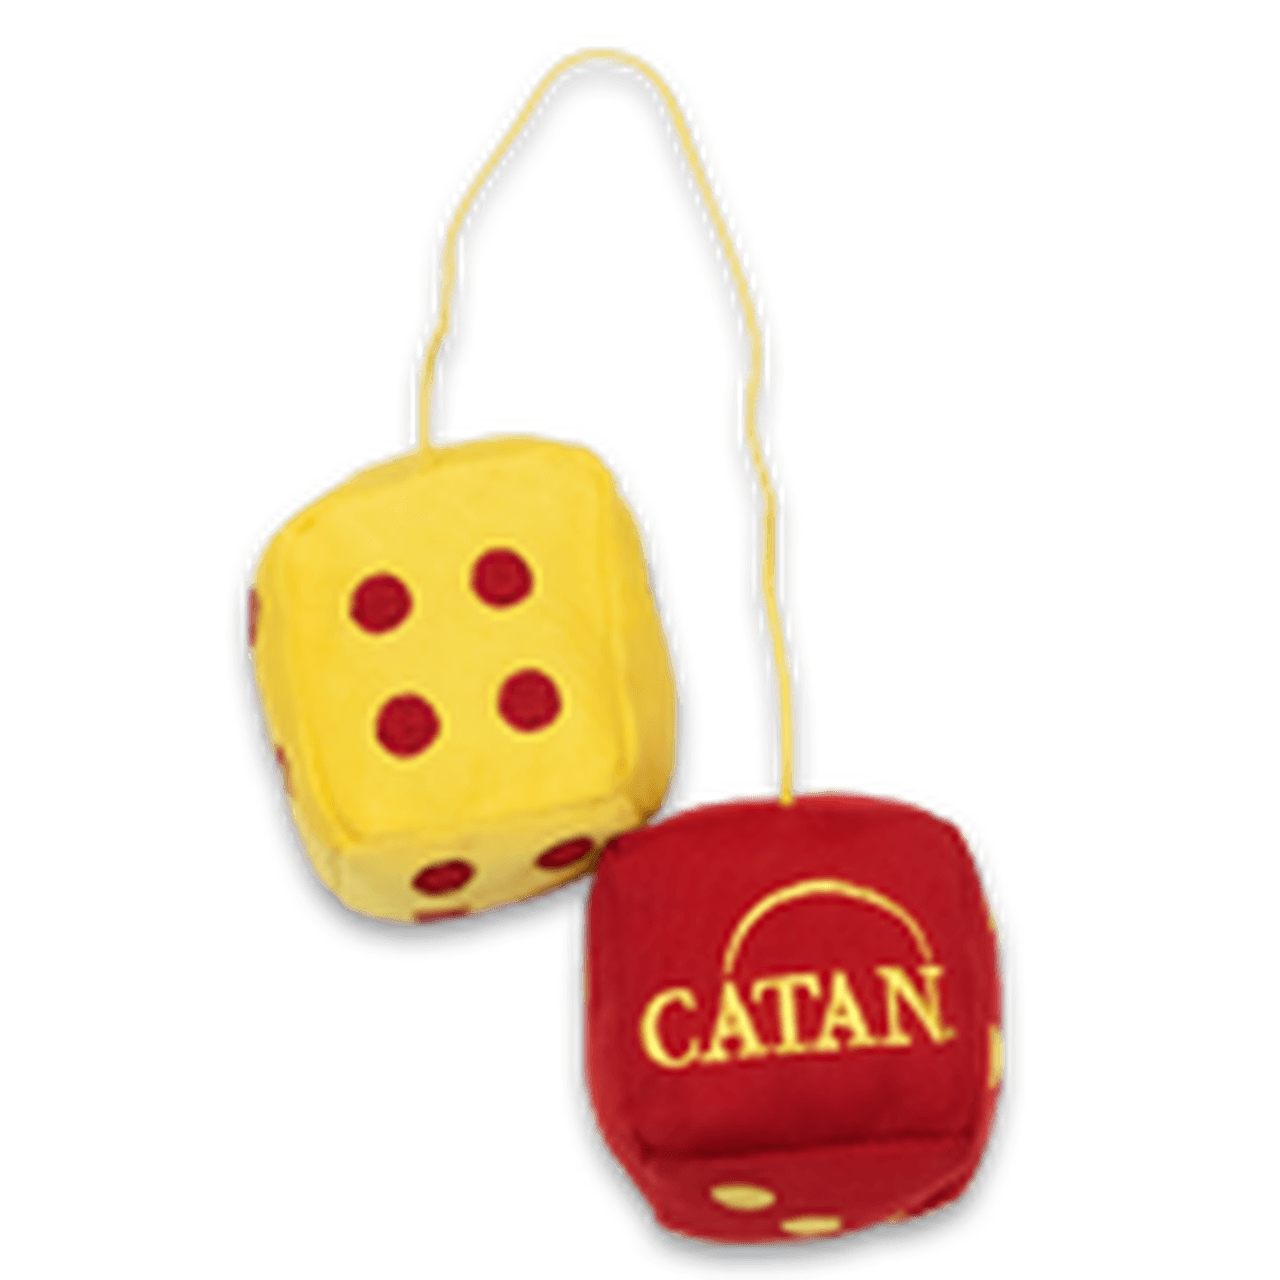 Catan Logo - Catan Fuzzy Dice Set